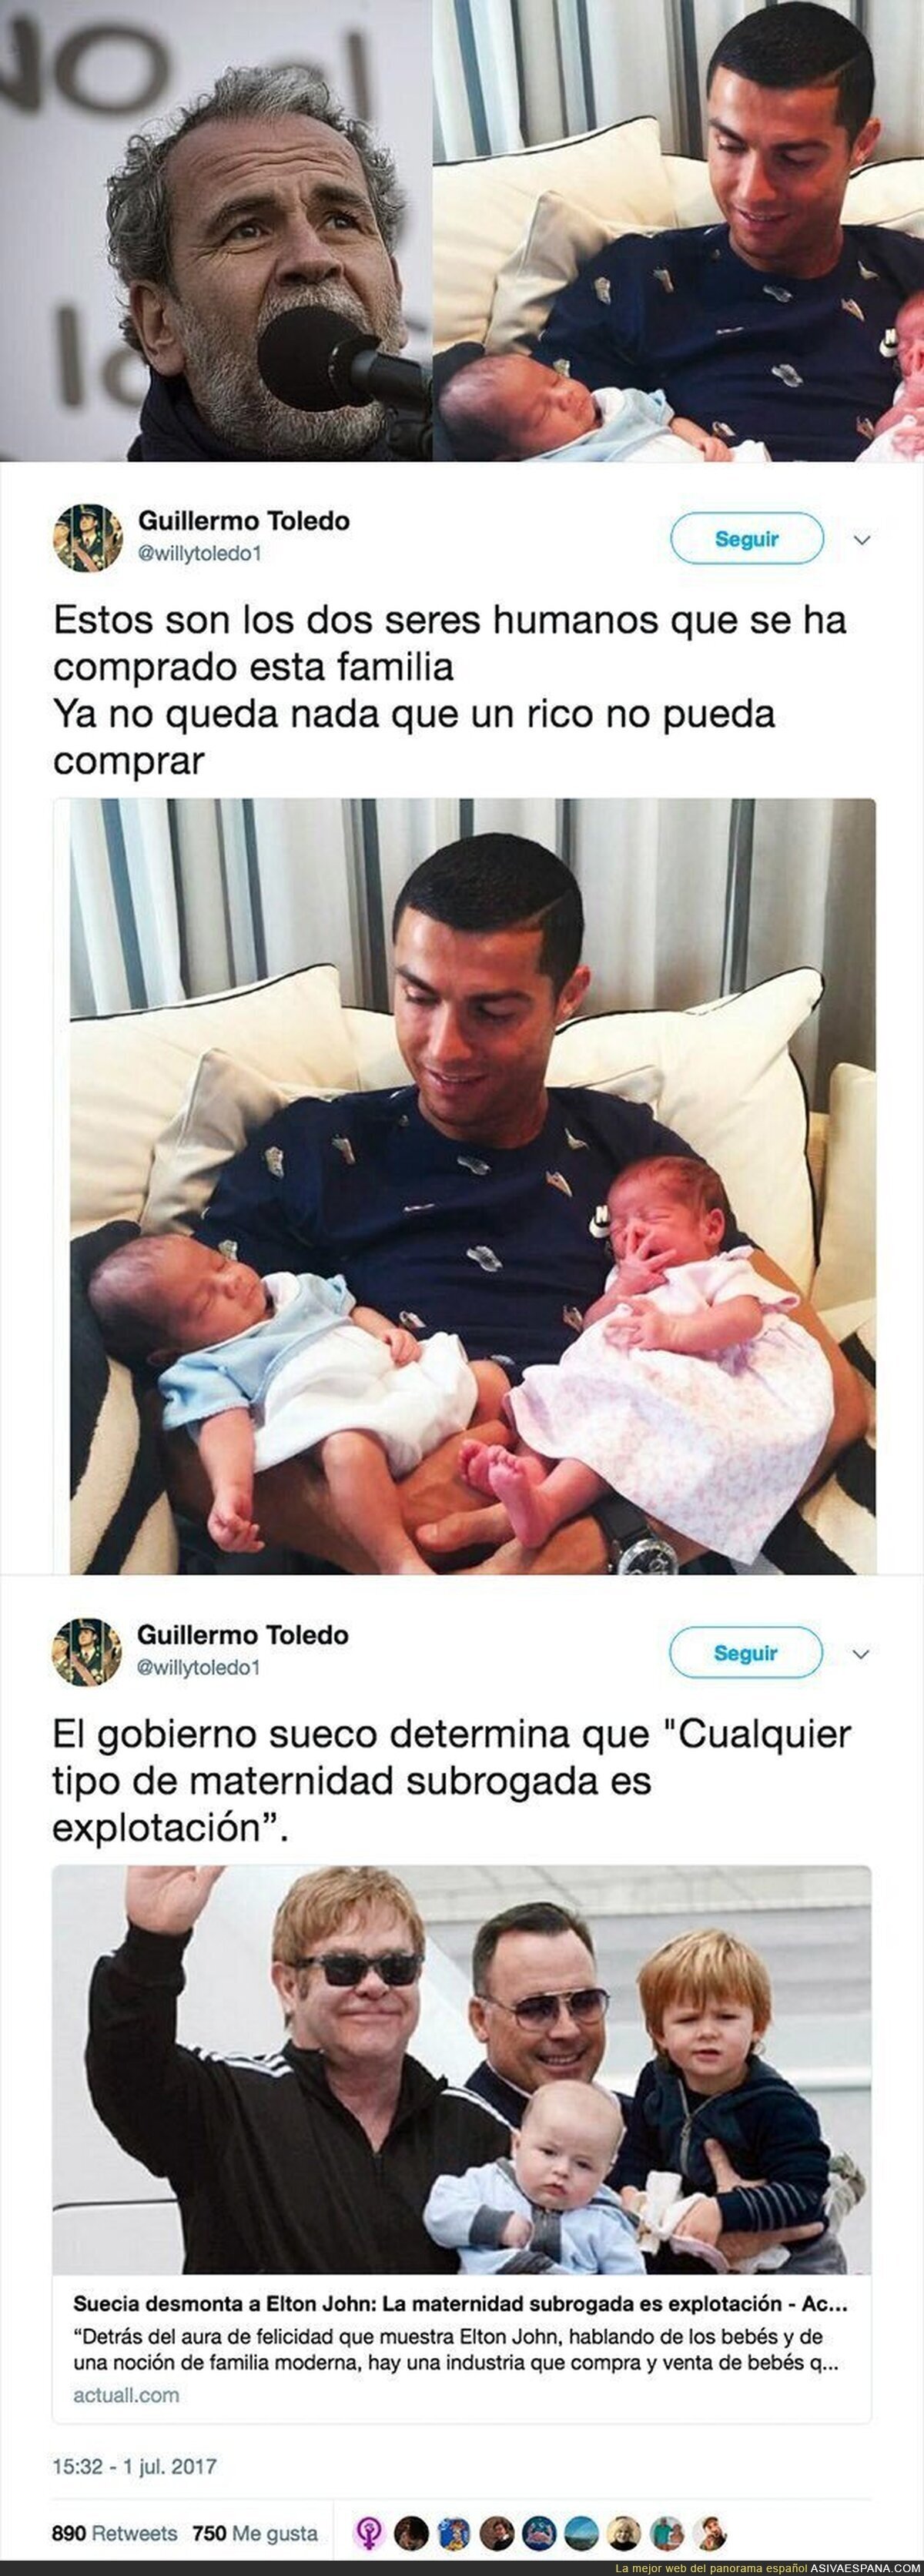 La dura crítica de Willy Toledo a Cristiano Ronaldo tras comprarse dos hijos